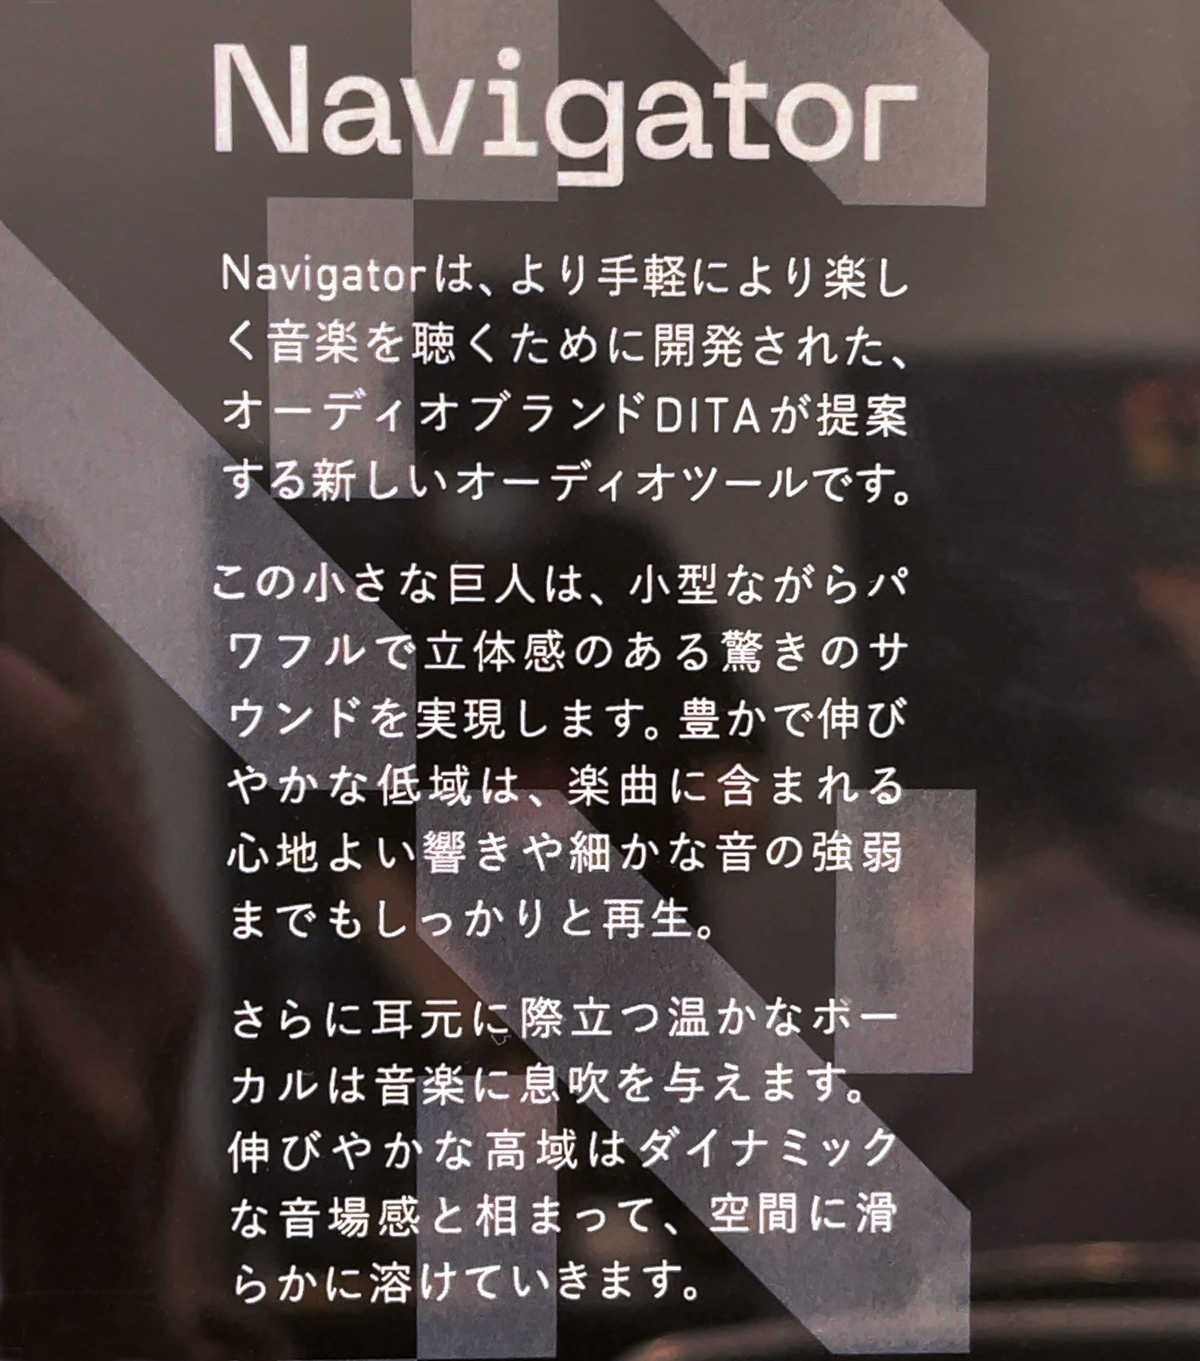 ヘッドフォン祭miniでDITA Navigatorを試聴しました | Just a blue